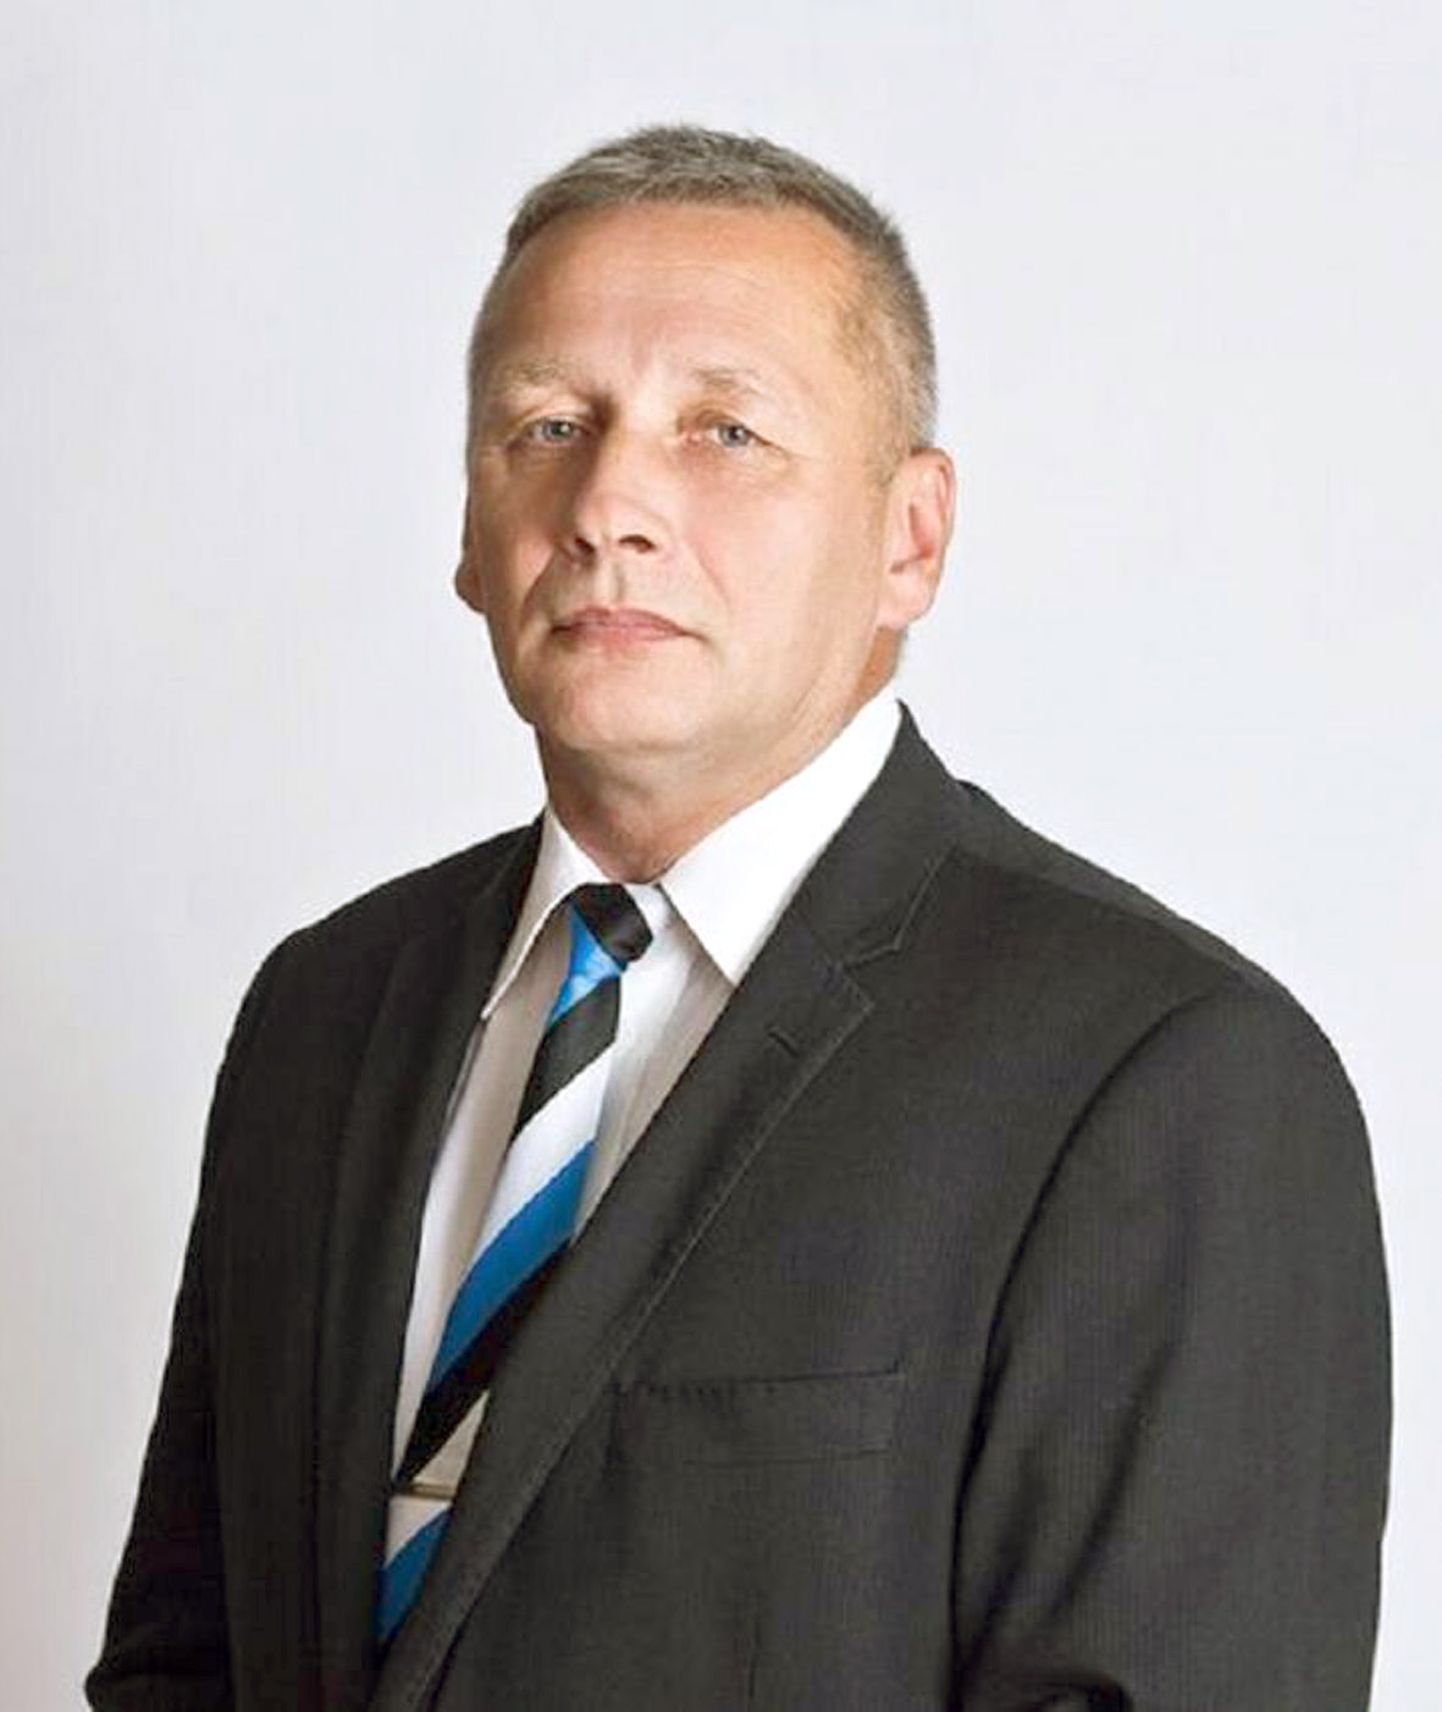 Калле Грюнтал, член Рийгикогу, Консервативная народная партия Эстонии.